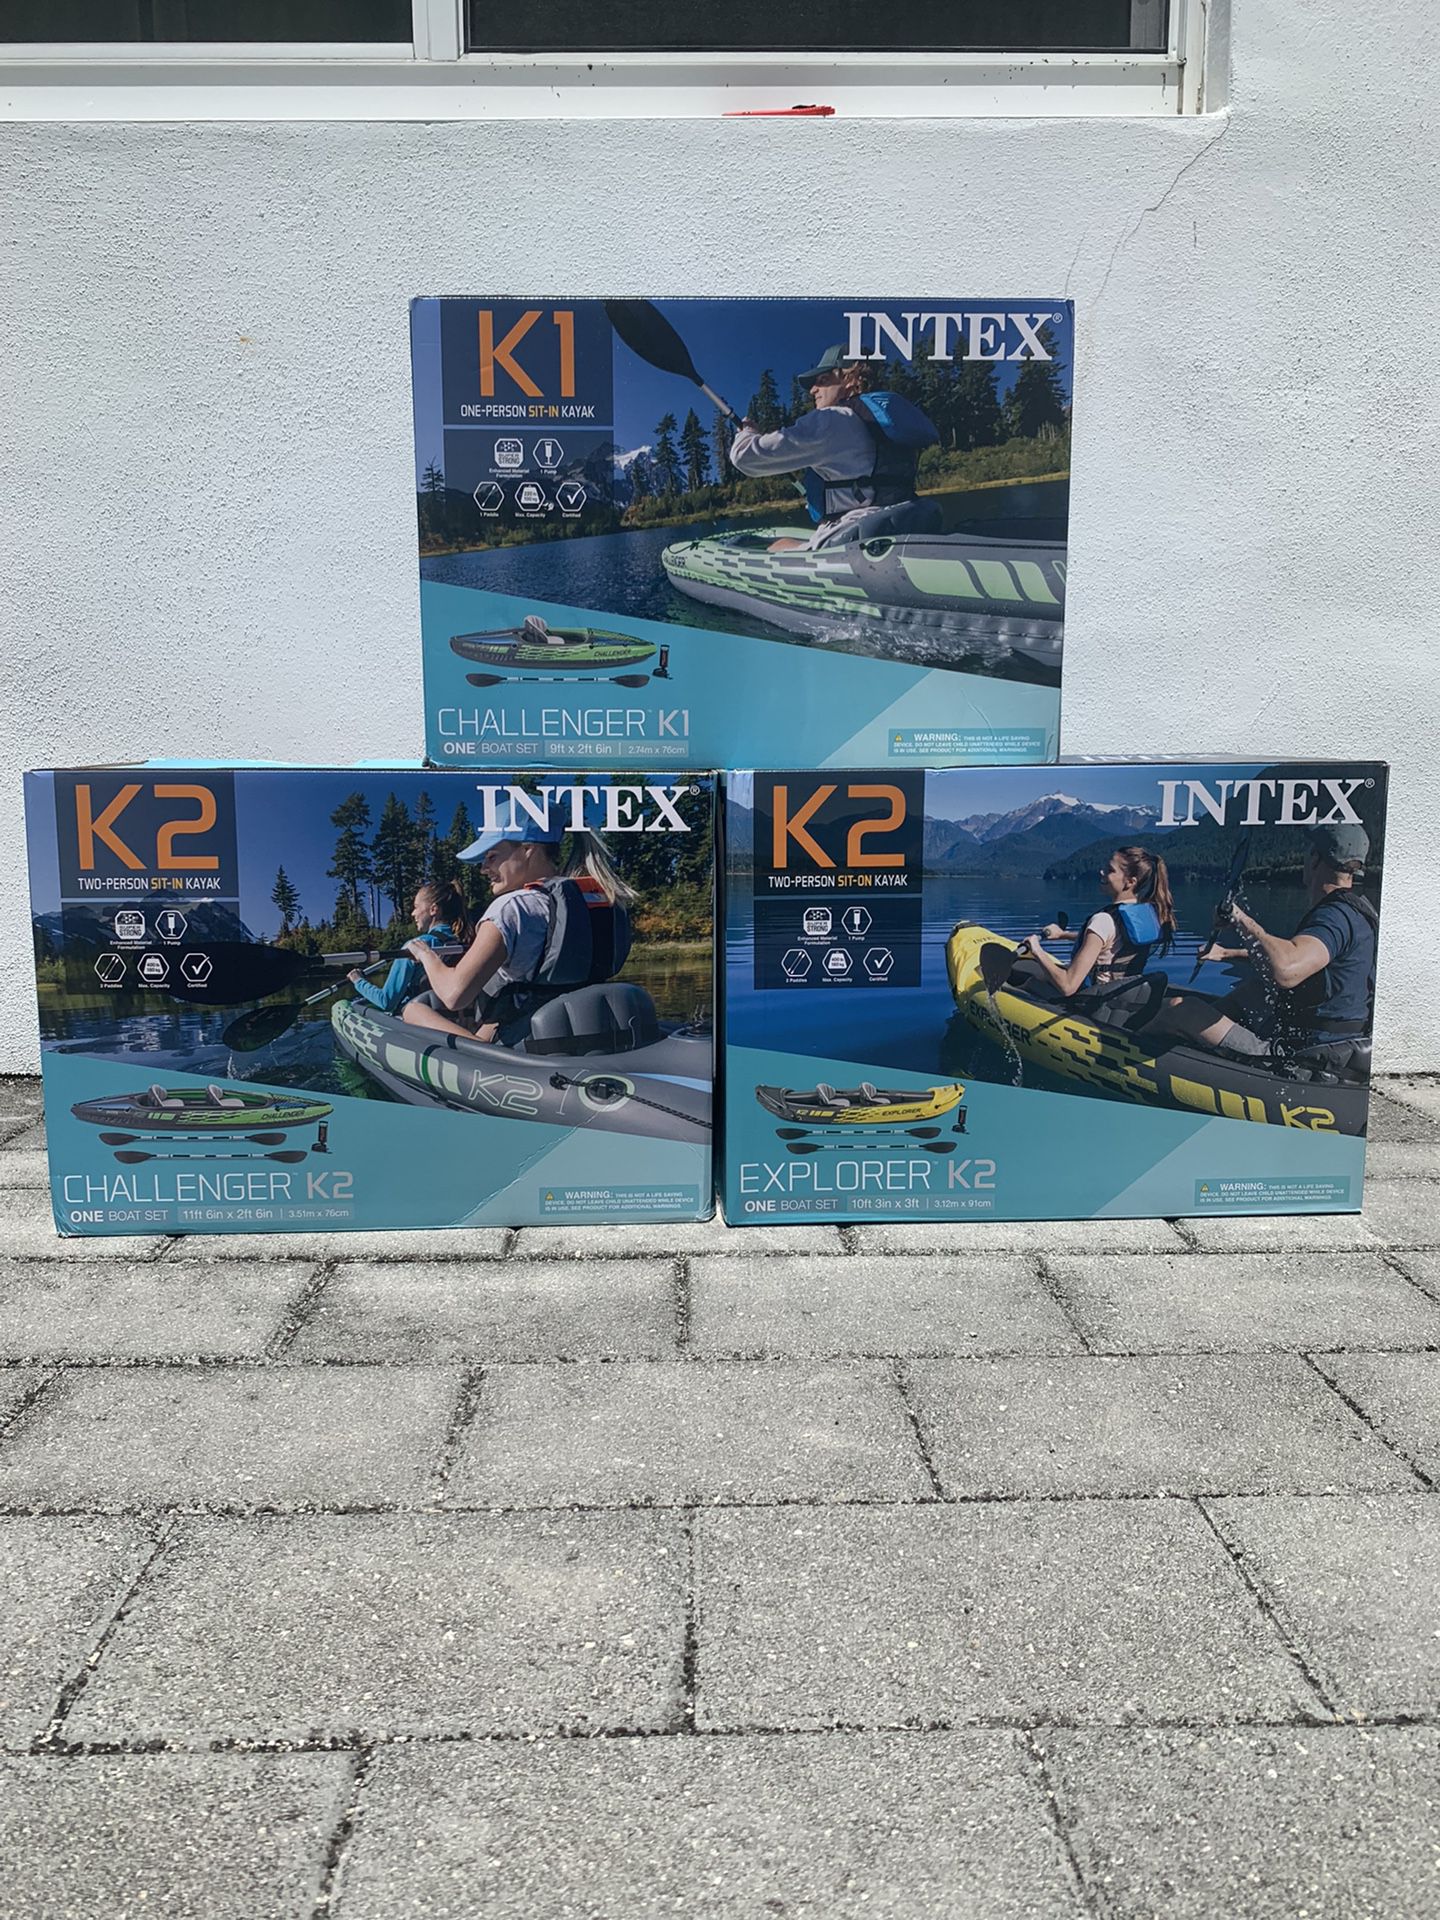 Kayaks Sealed Brand New K1 K2 Kayaks New Explorer And Challenger 